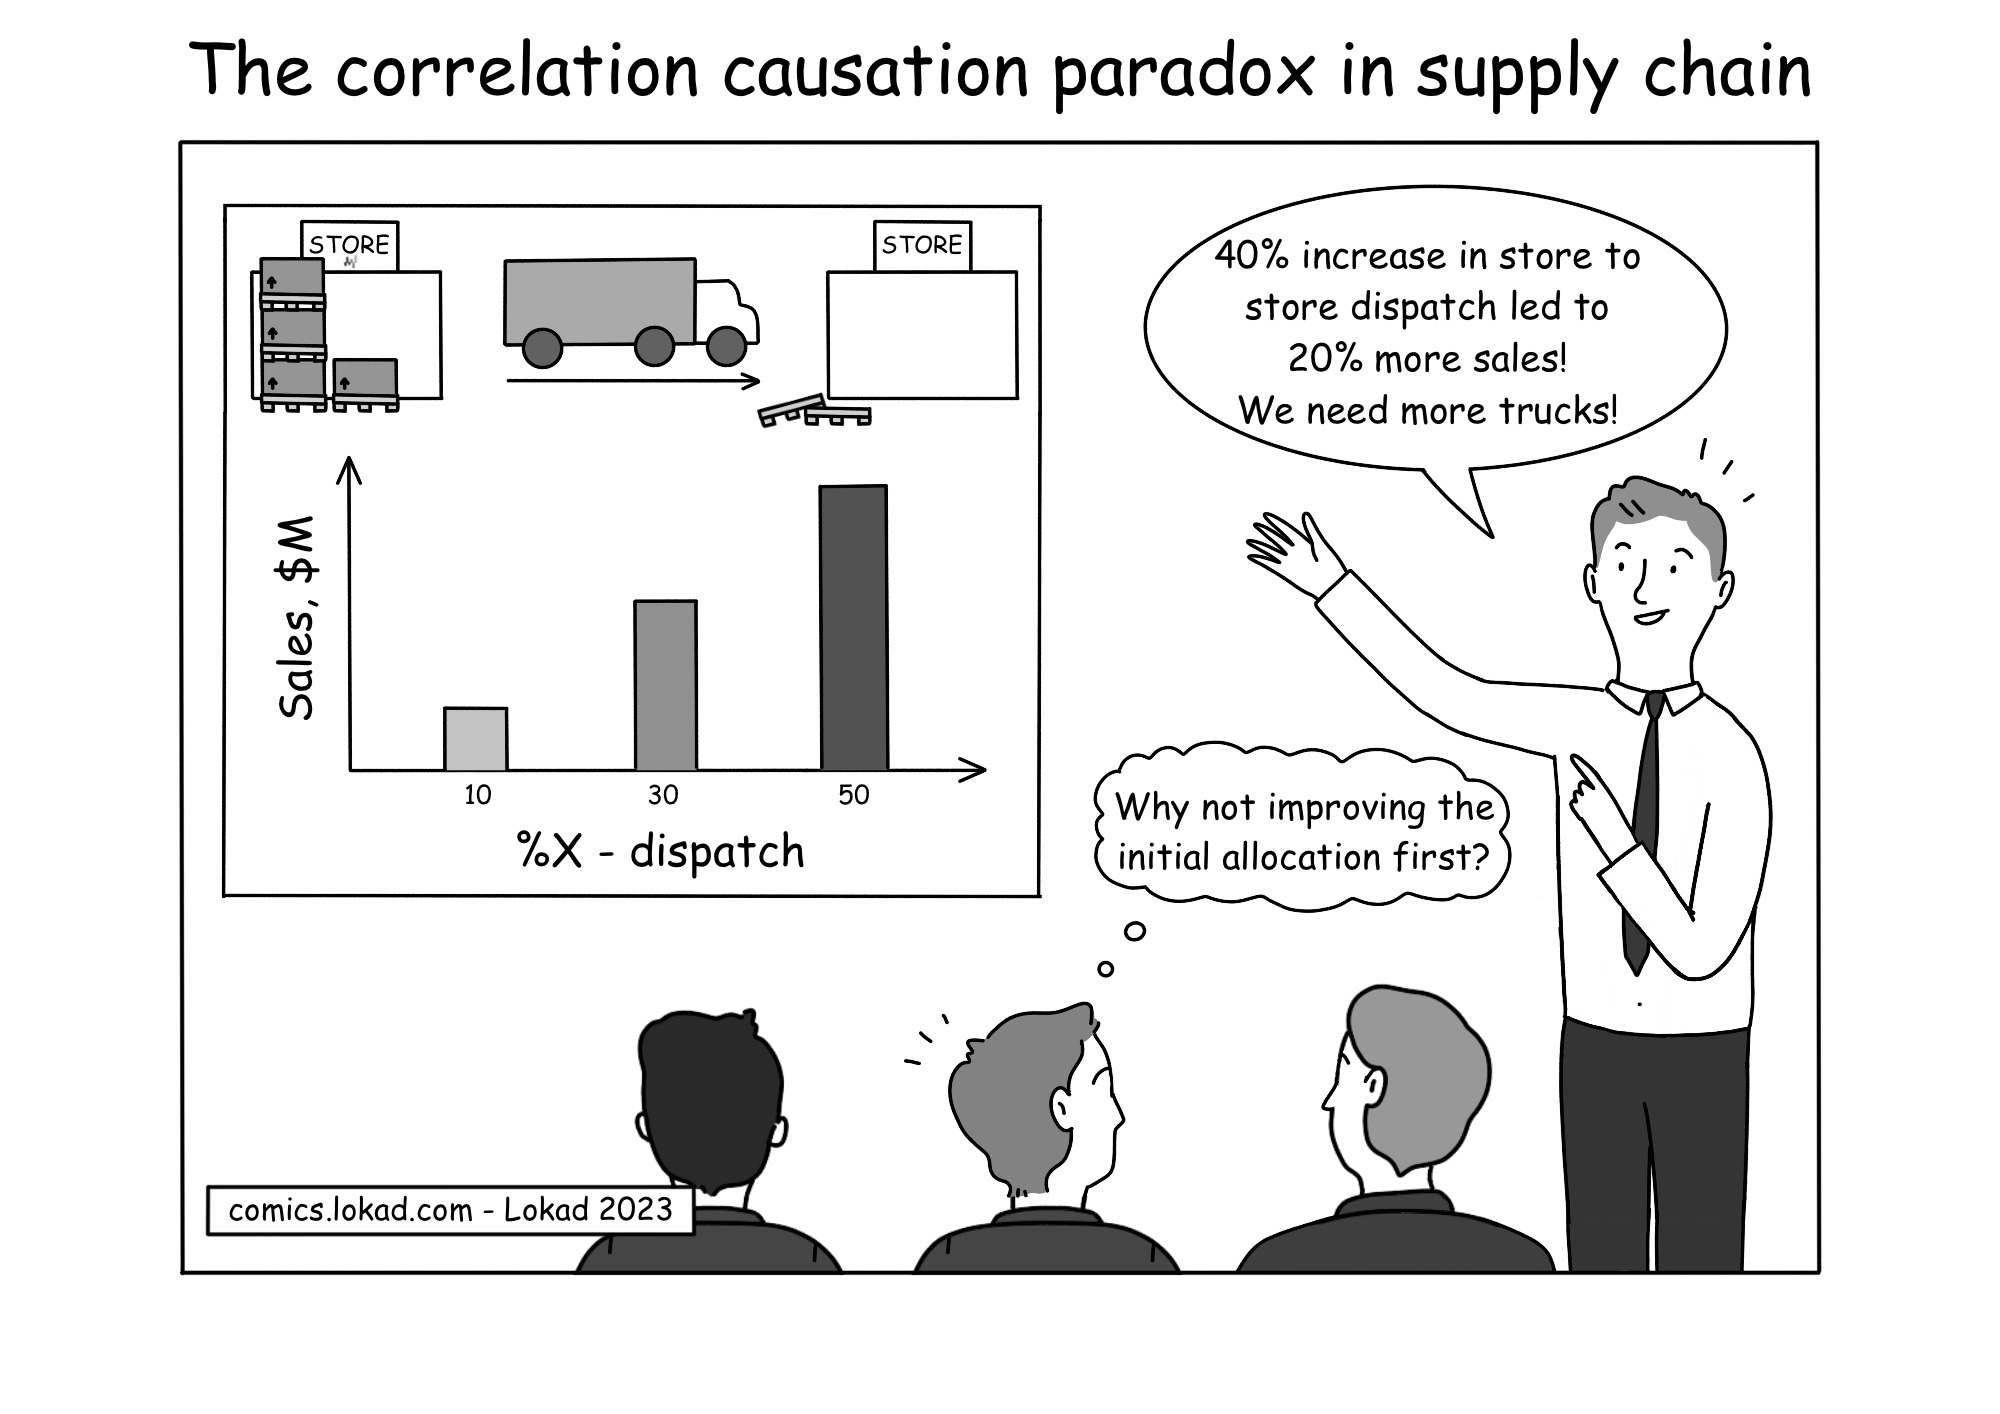 Il paradosso correlazione-causalità nella supply chain